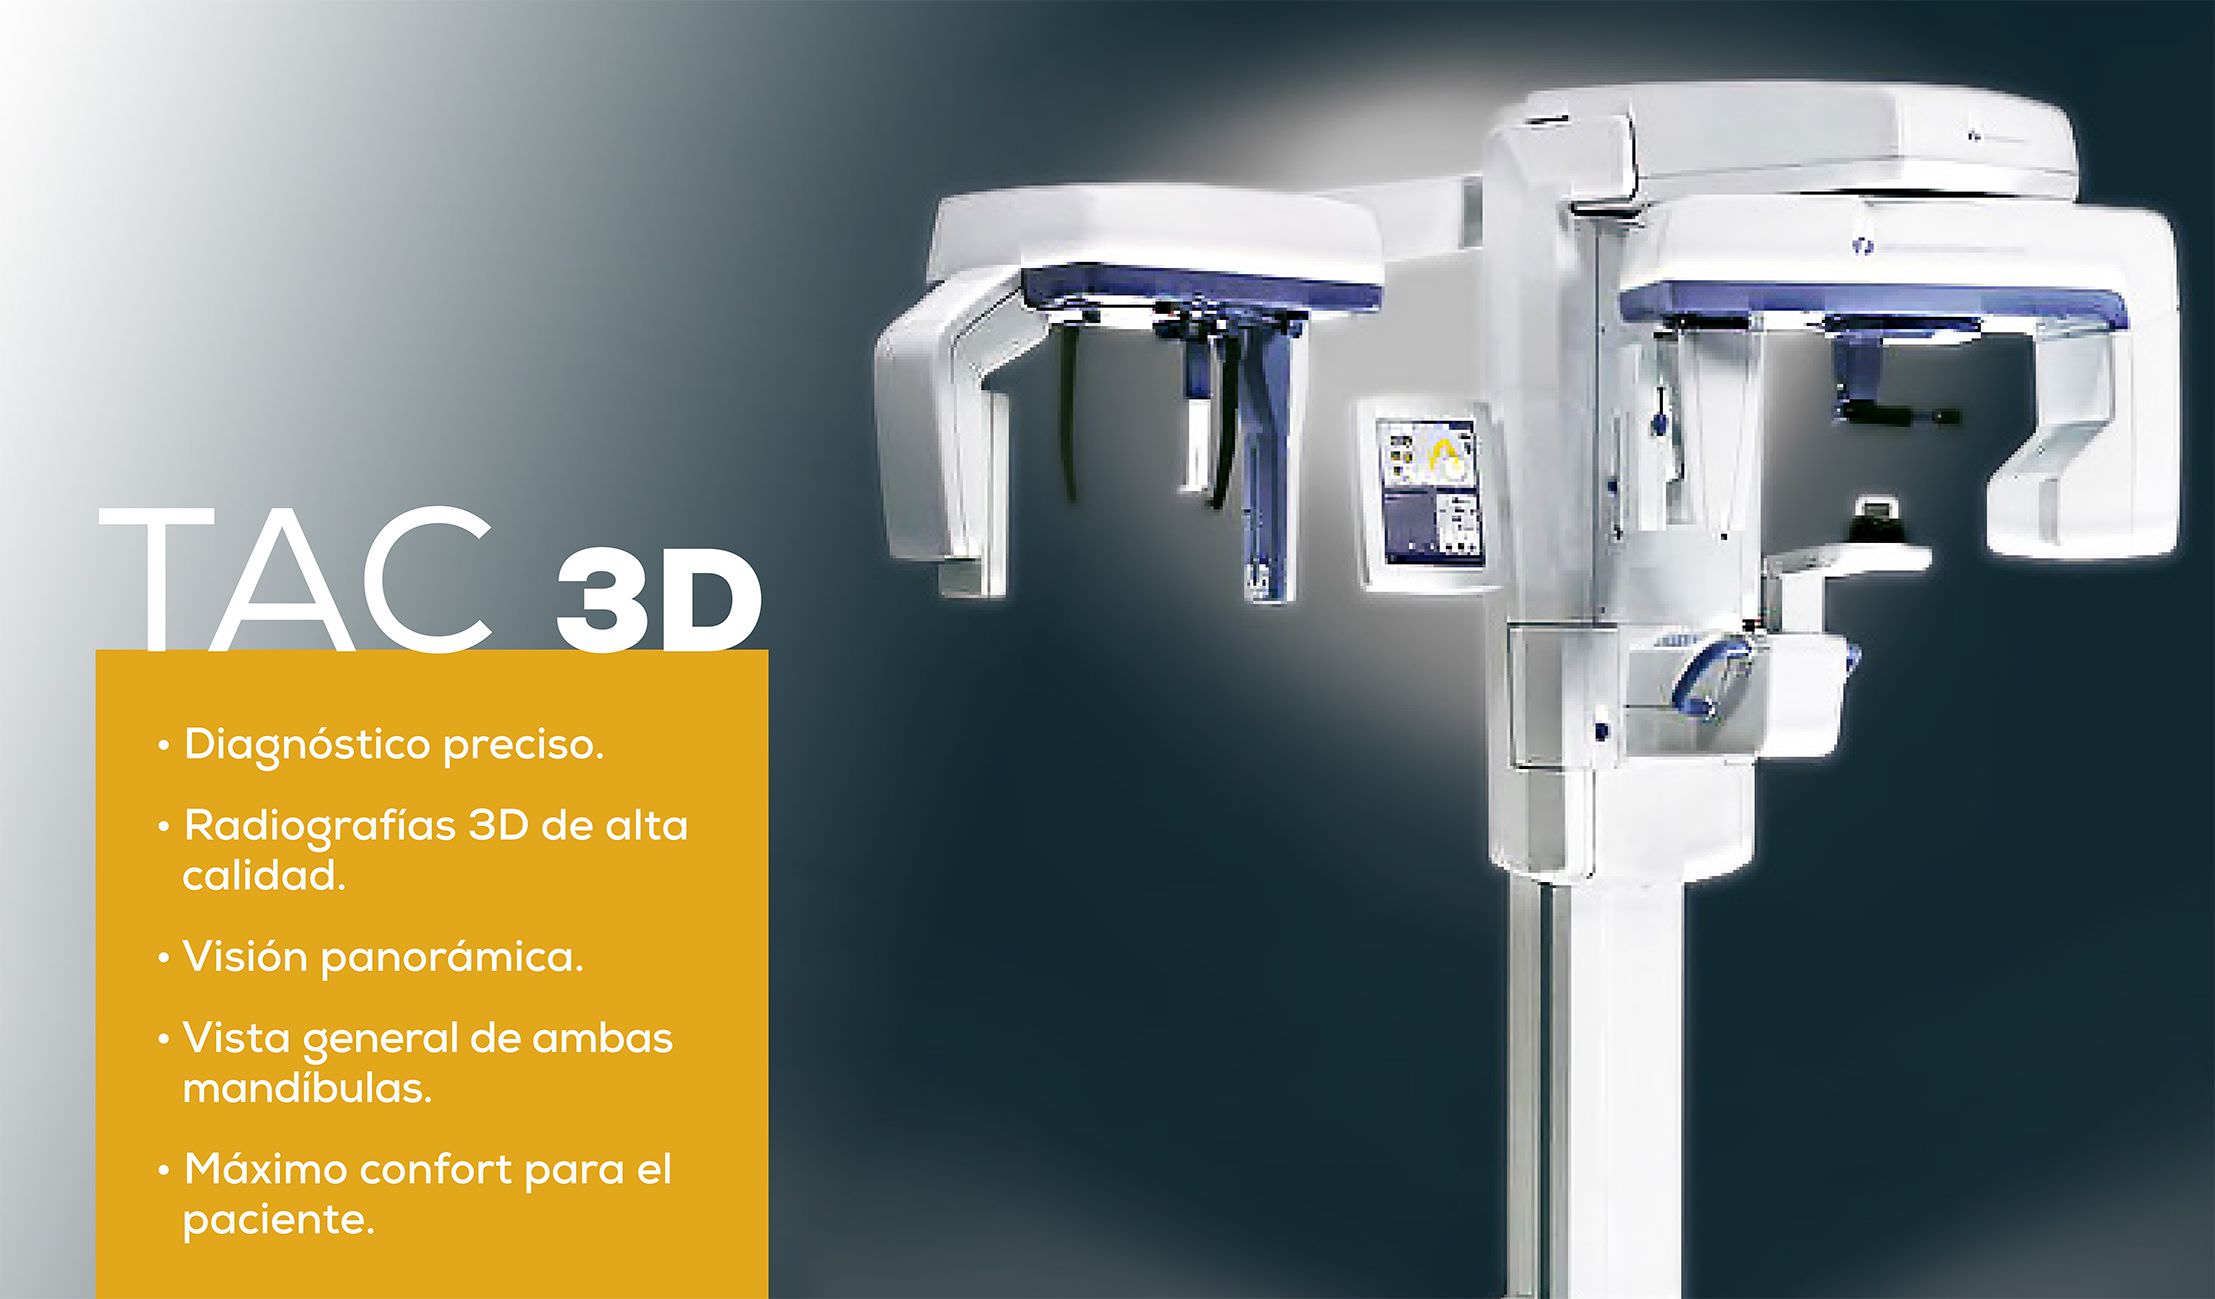 Diagnóstico preciso. Radiografías 3d de alta calidad. Visión panorámica. Vista general de ambas mandíbulas- Máximo confort para el paciente.